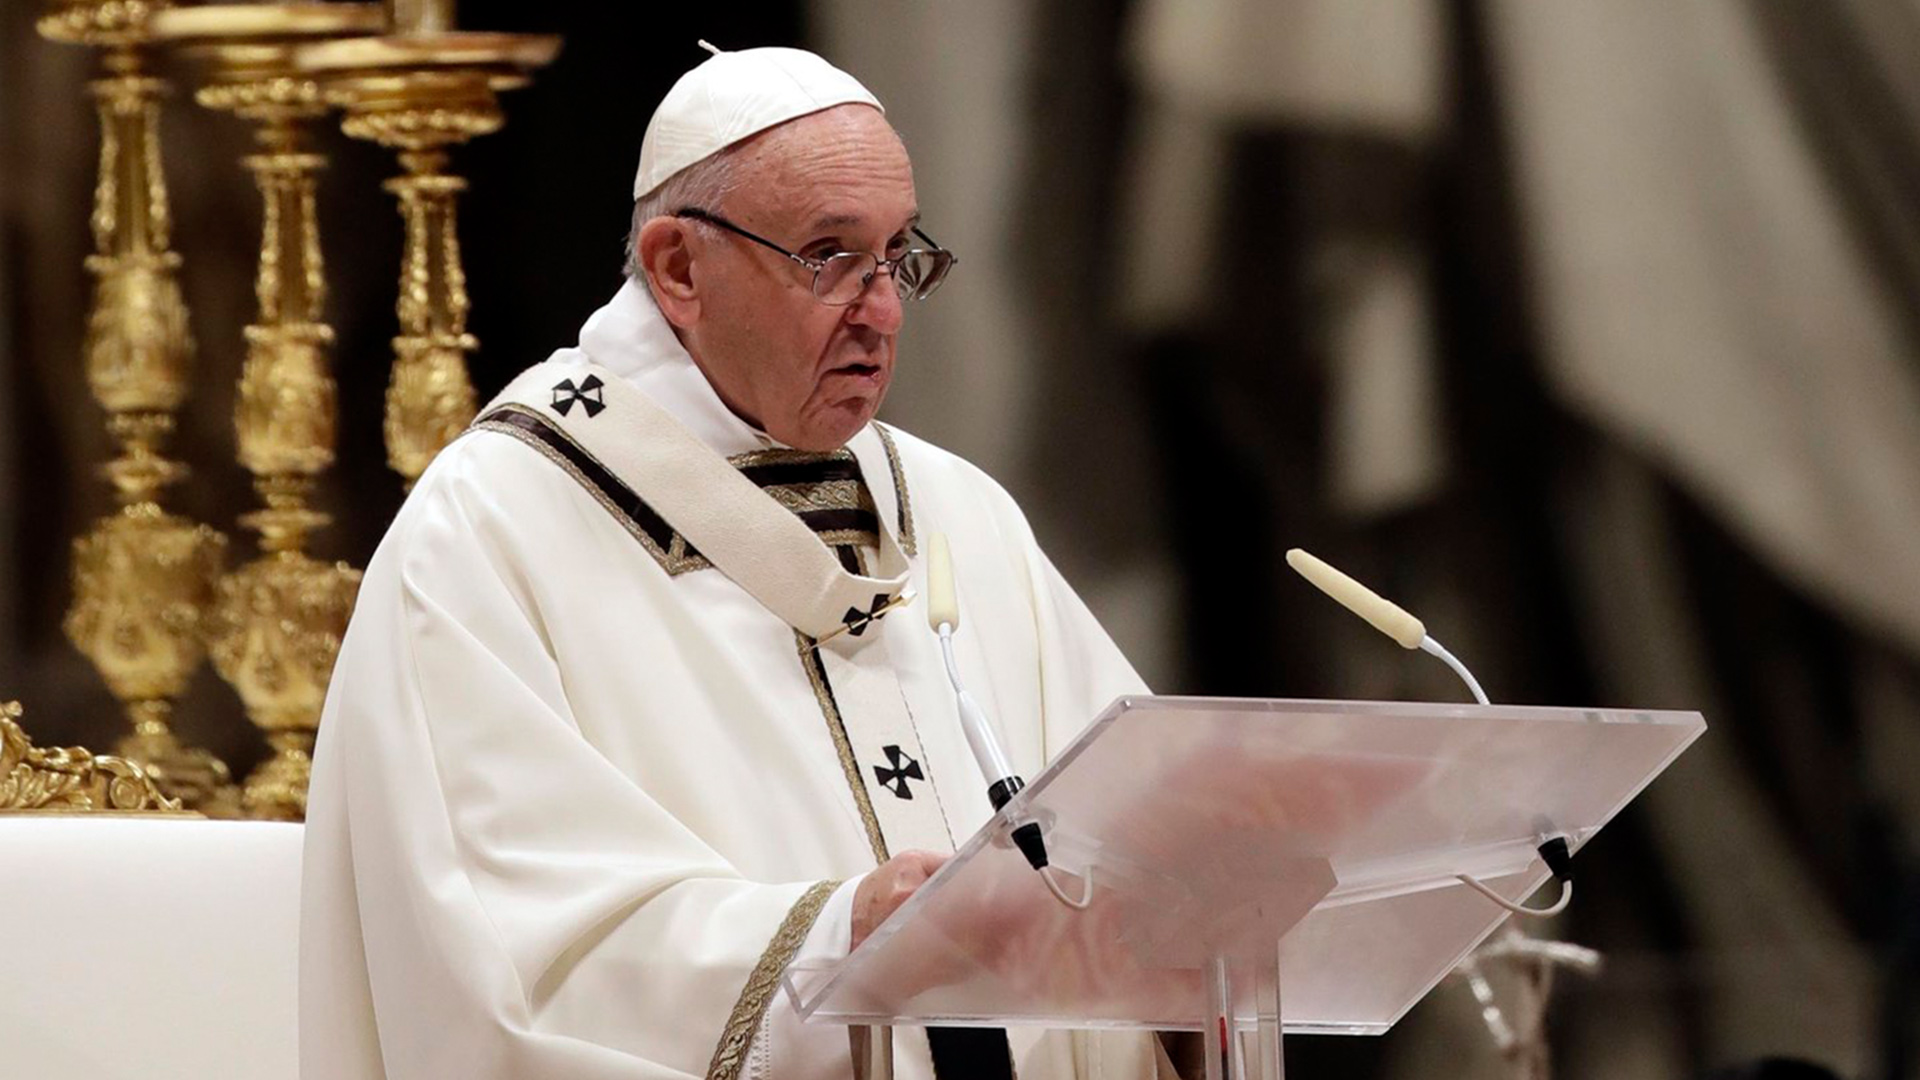 Papst Franziskus überbringt während der Heiligabend-Messe im Petersdom seine Weihnachtsbotschaft.